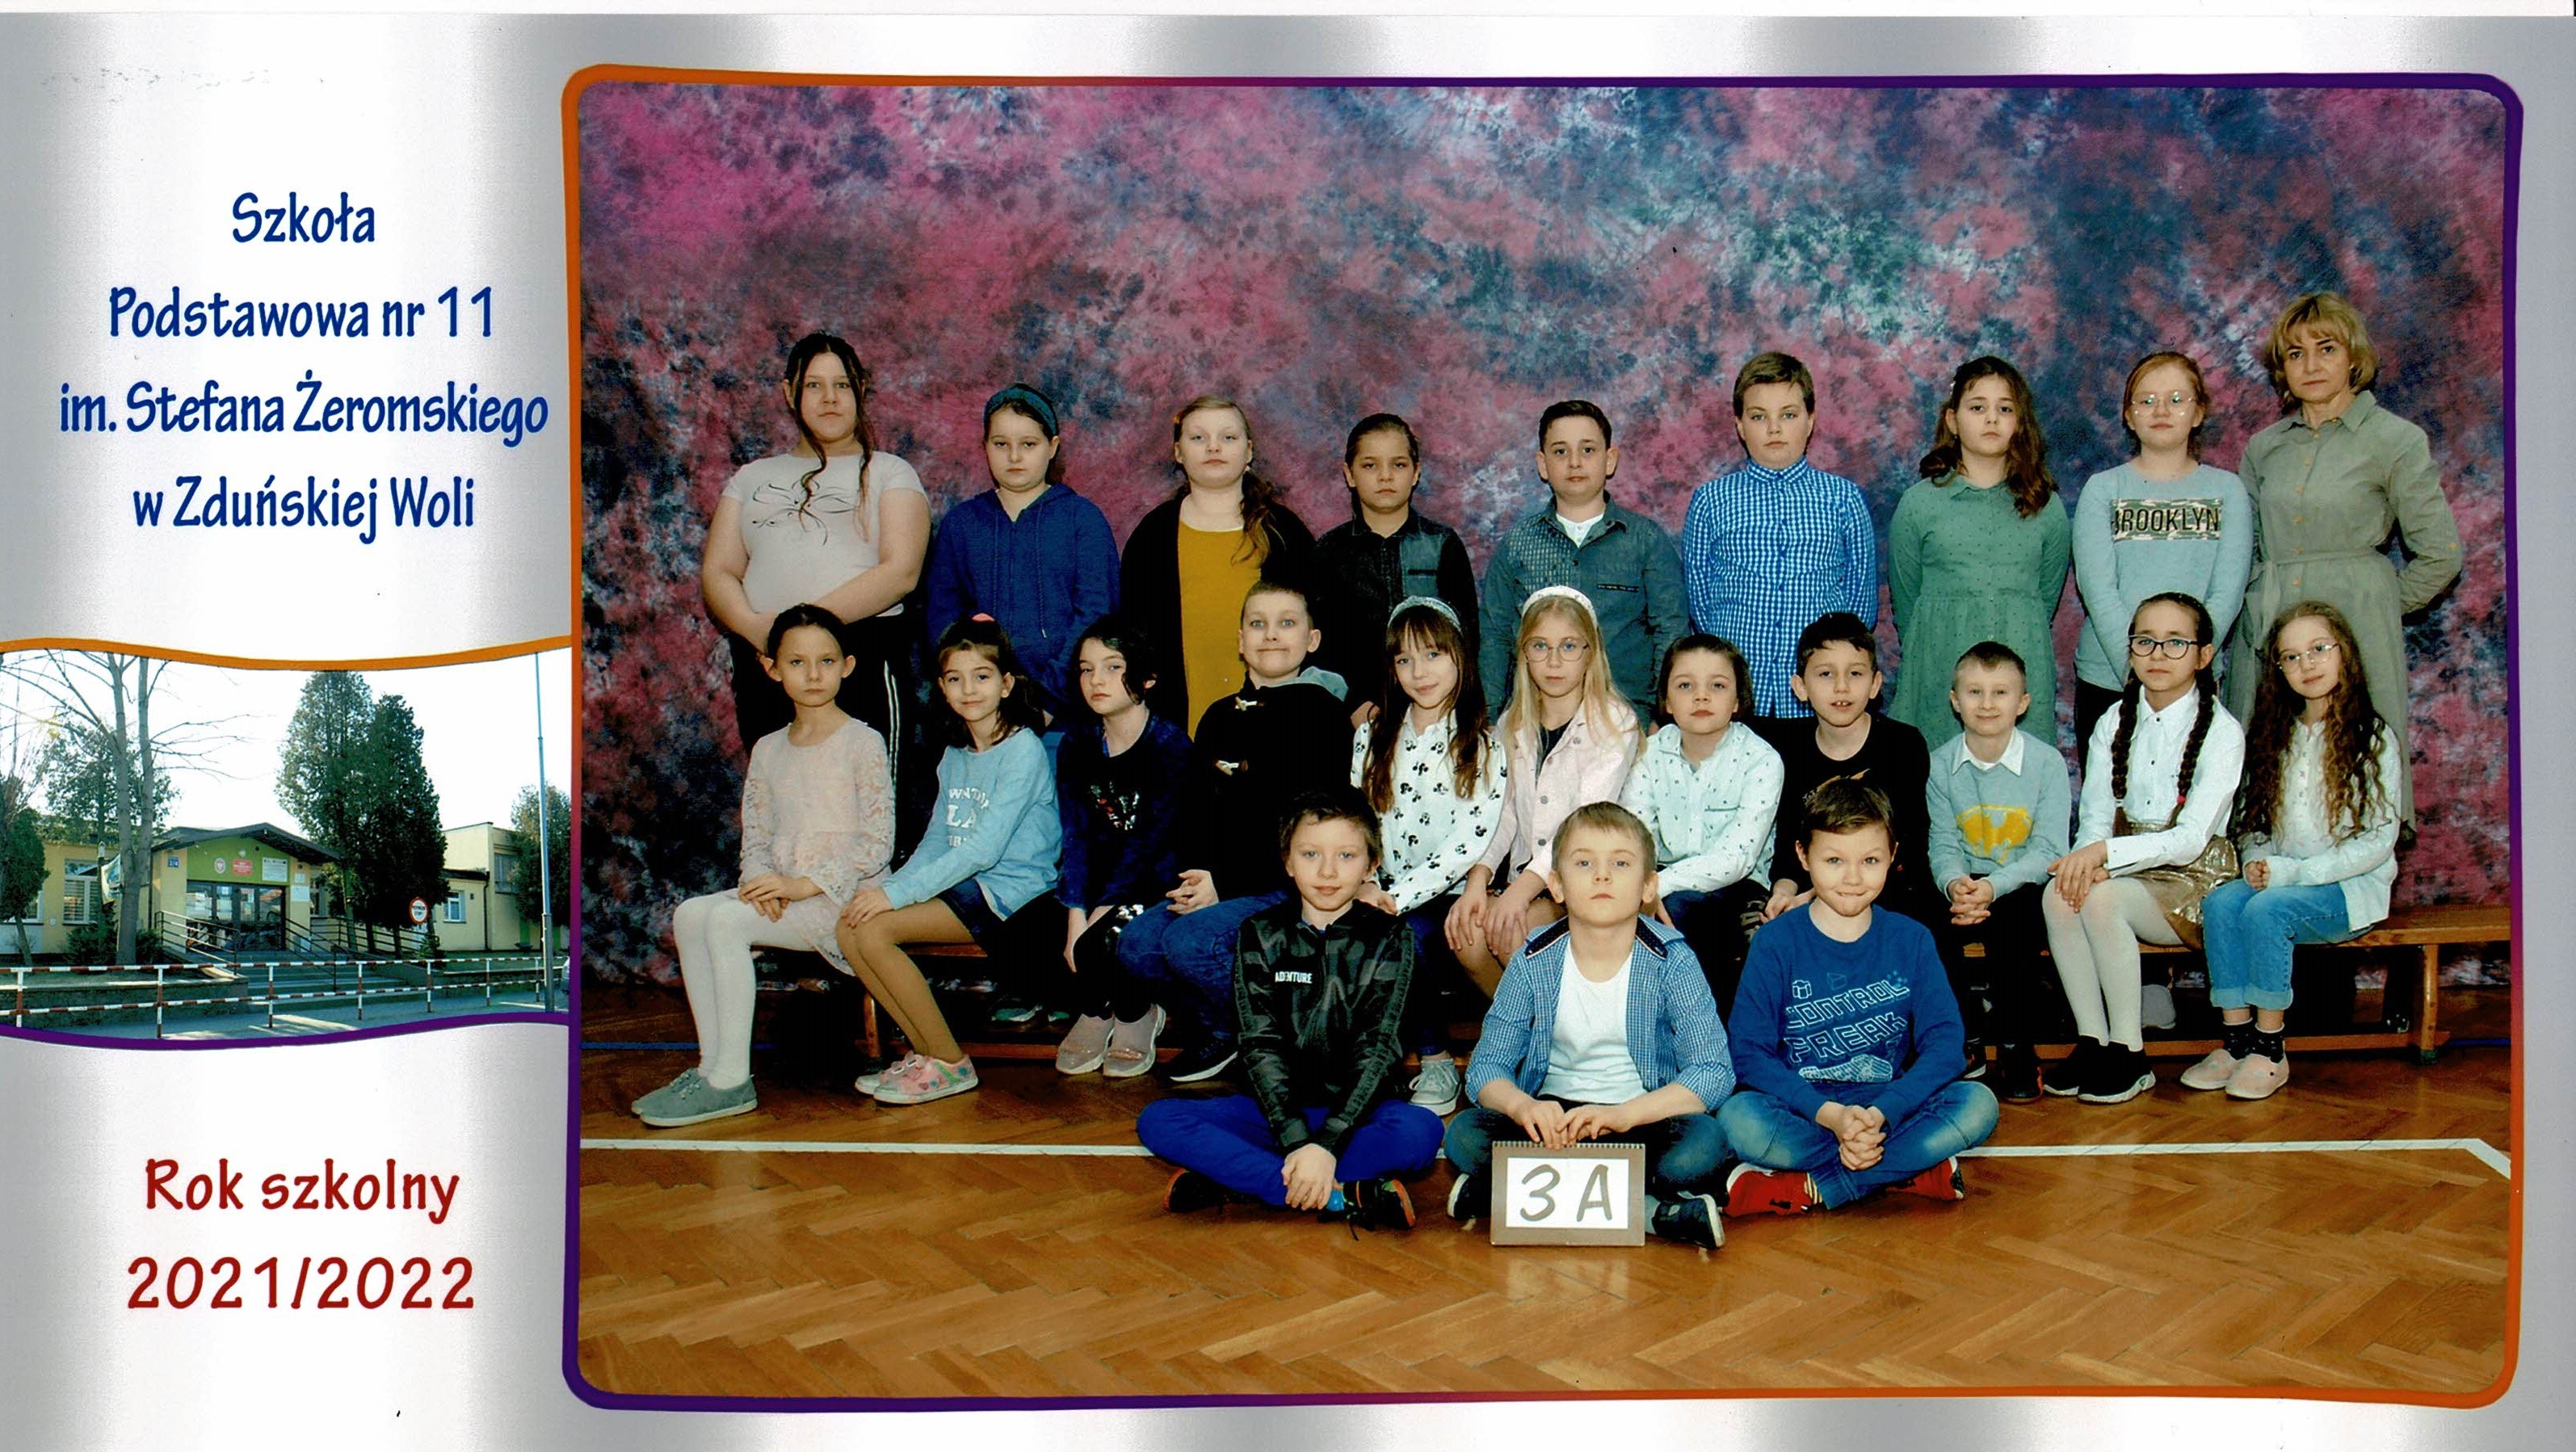 Uczniowie klasy 3A, dziewczynki i chłopcy siedzący na ławce z tabliczką "klasa 3a"